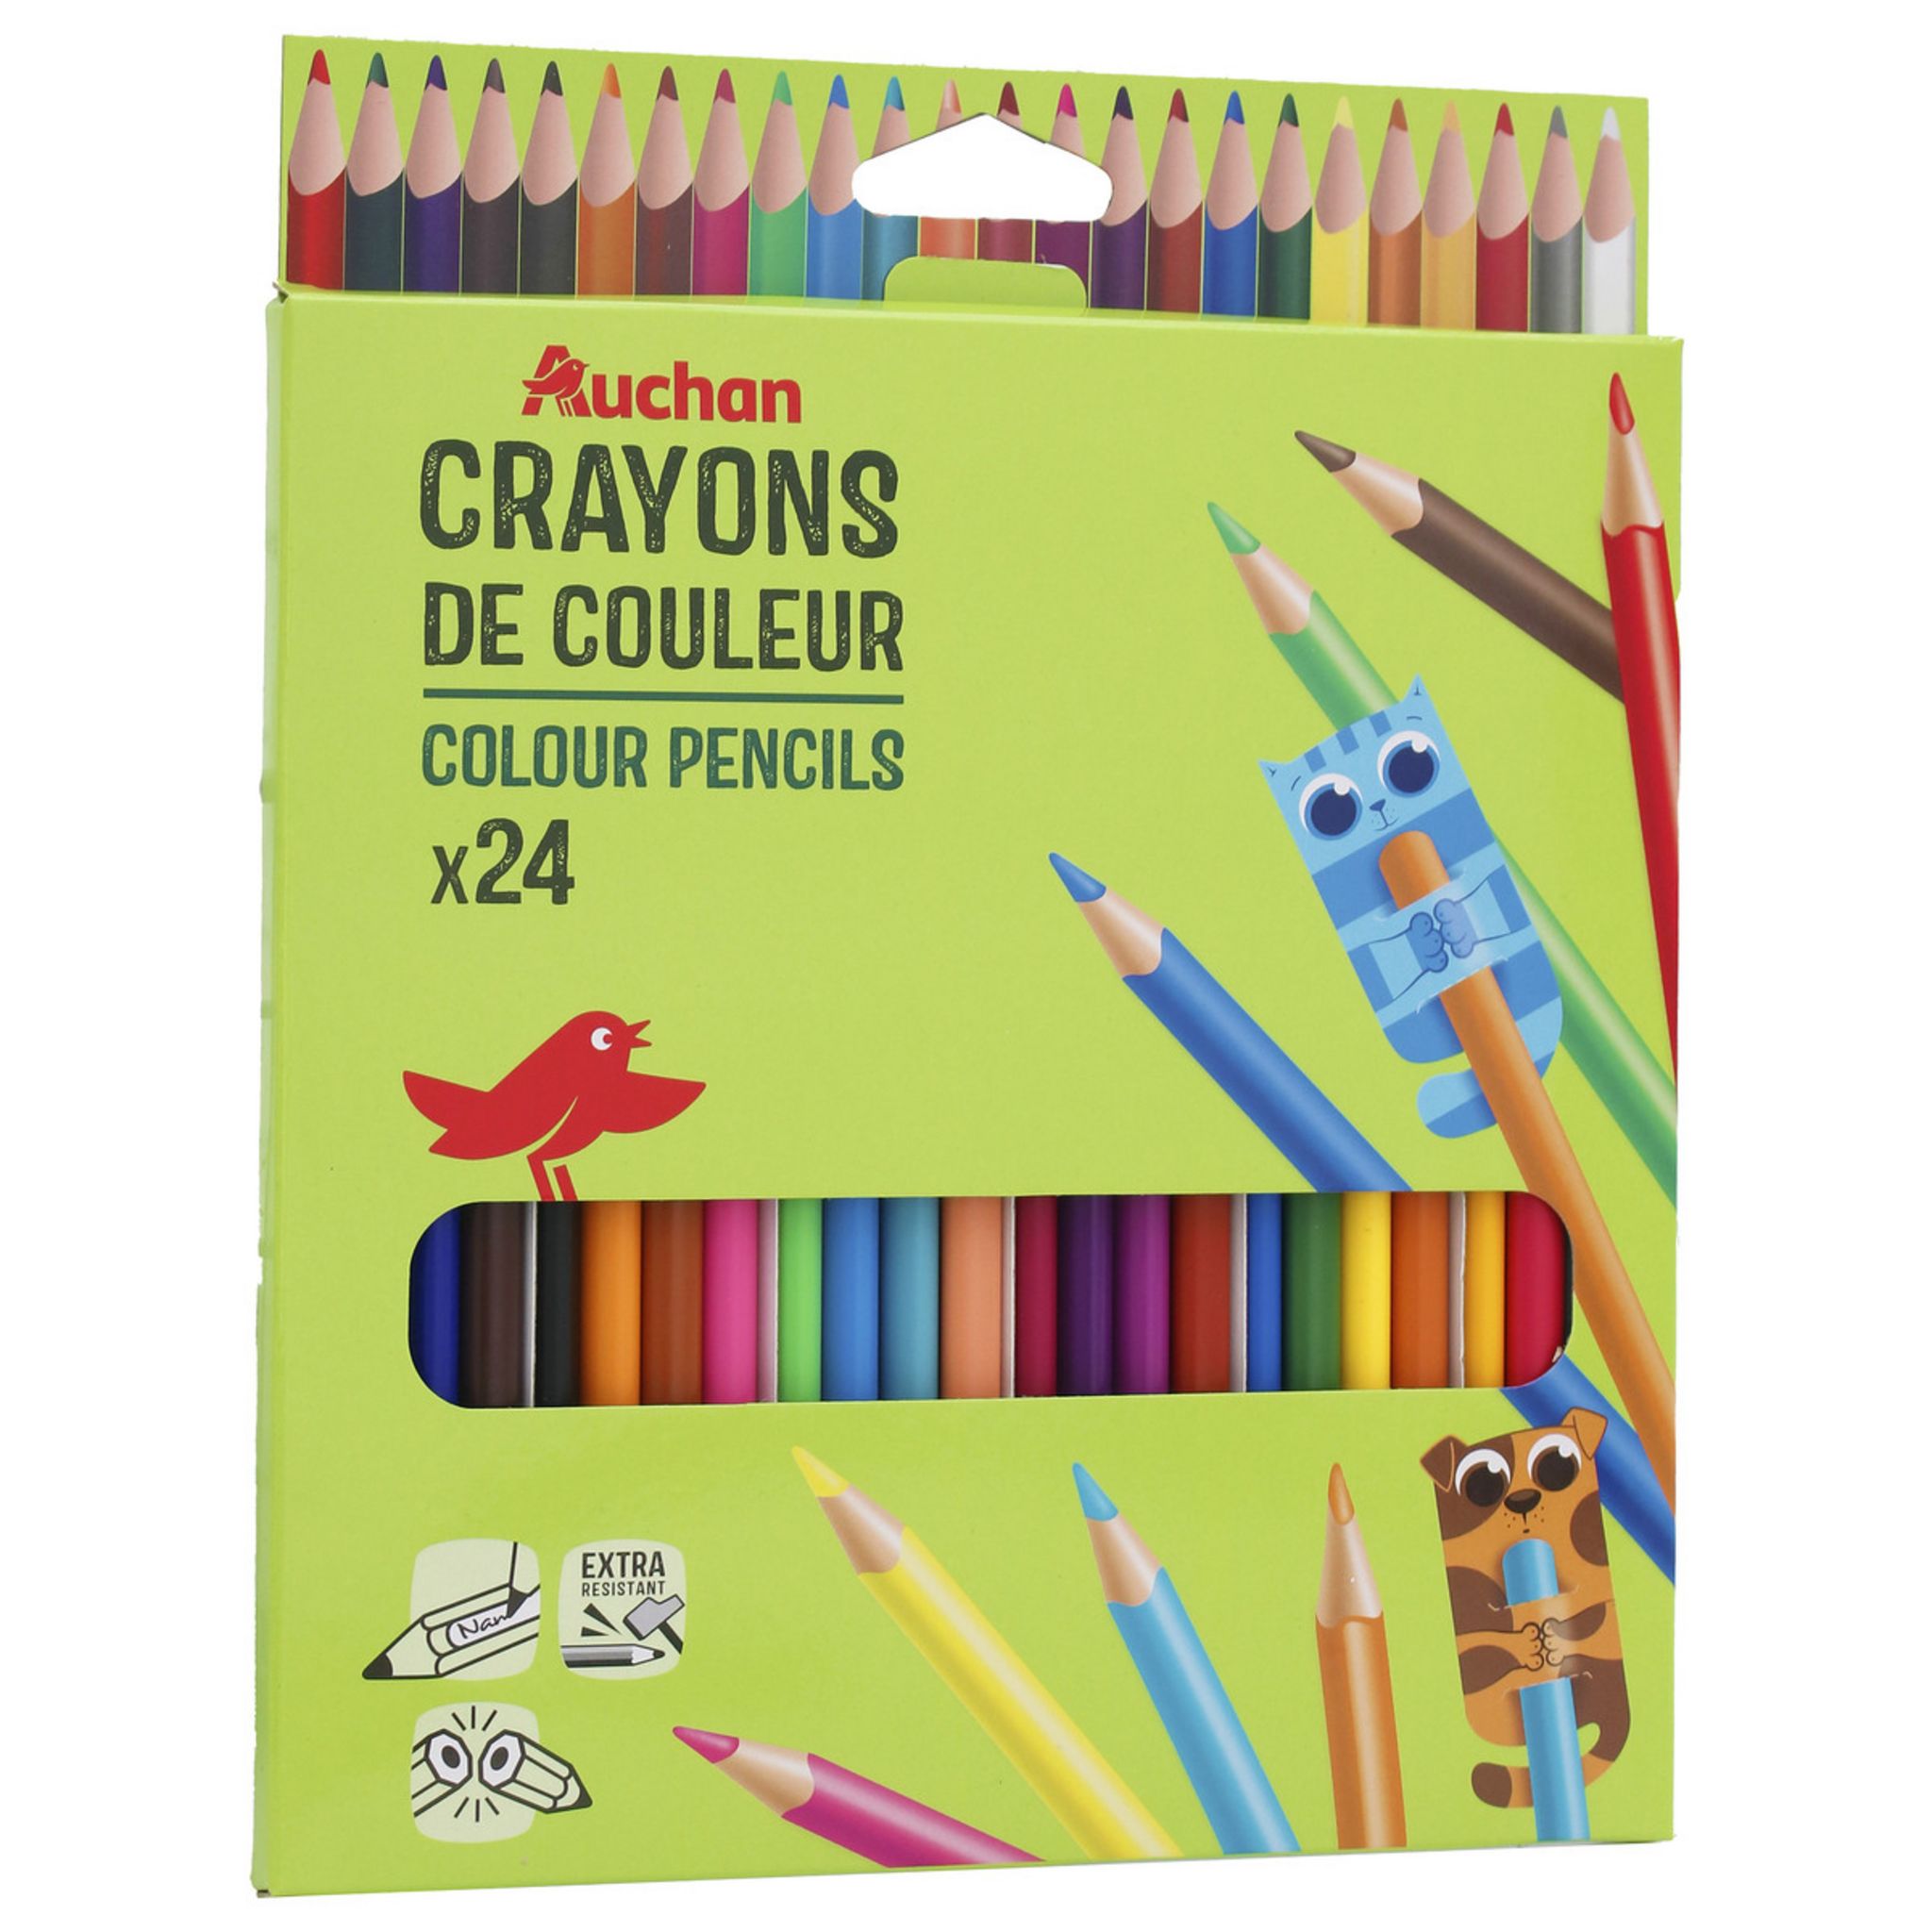 BIC KIDS Étui de 24 Crayons de couleur - Tropicolors (Dessin)